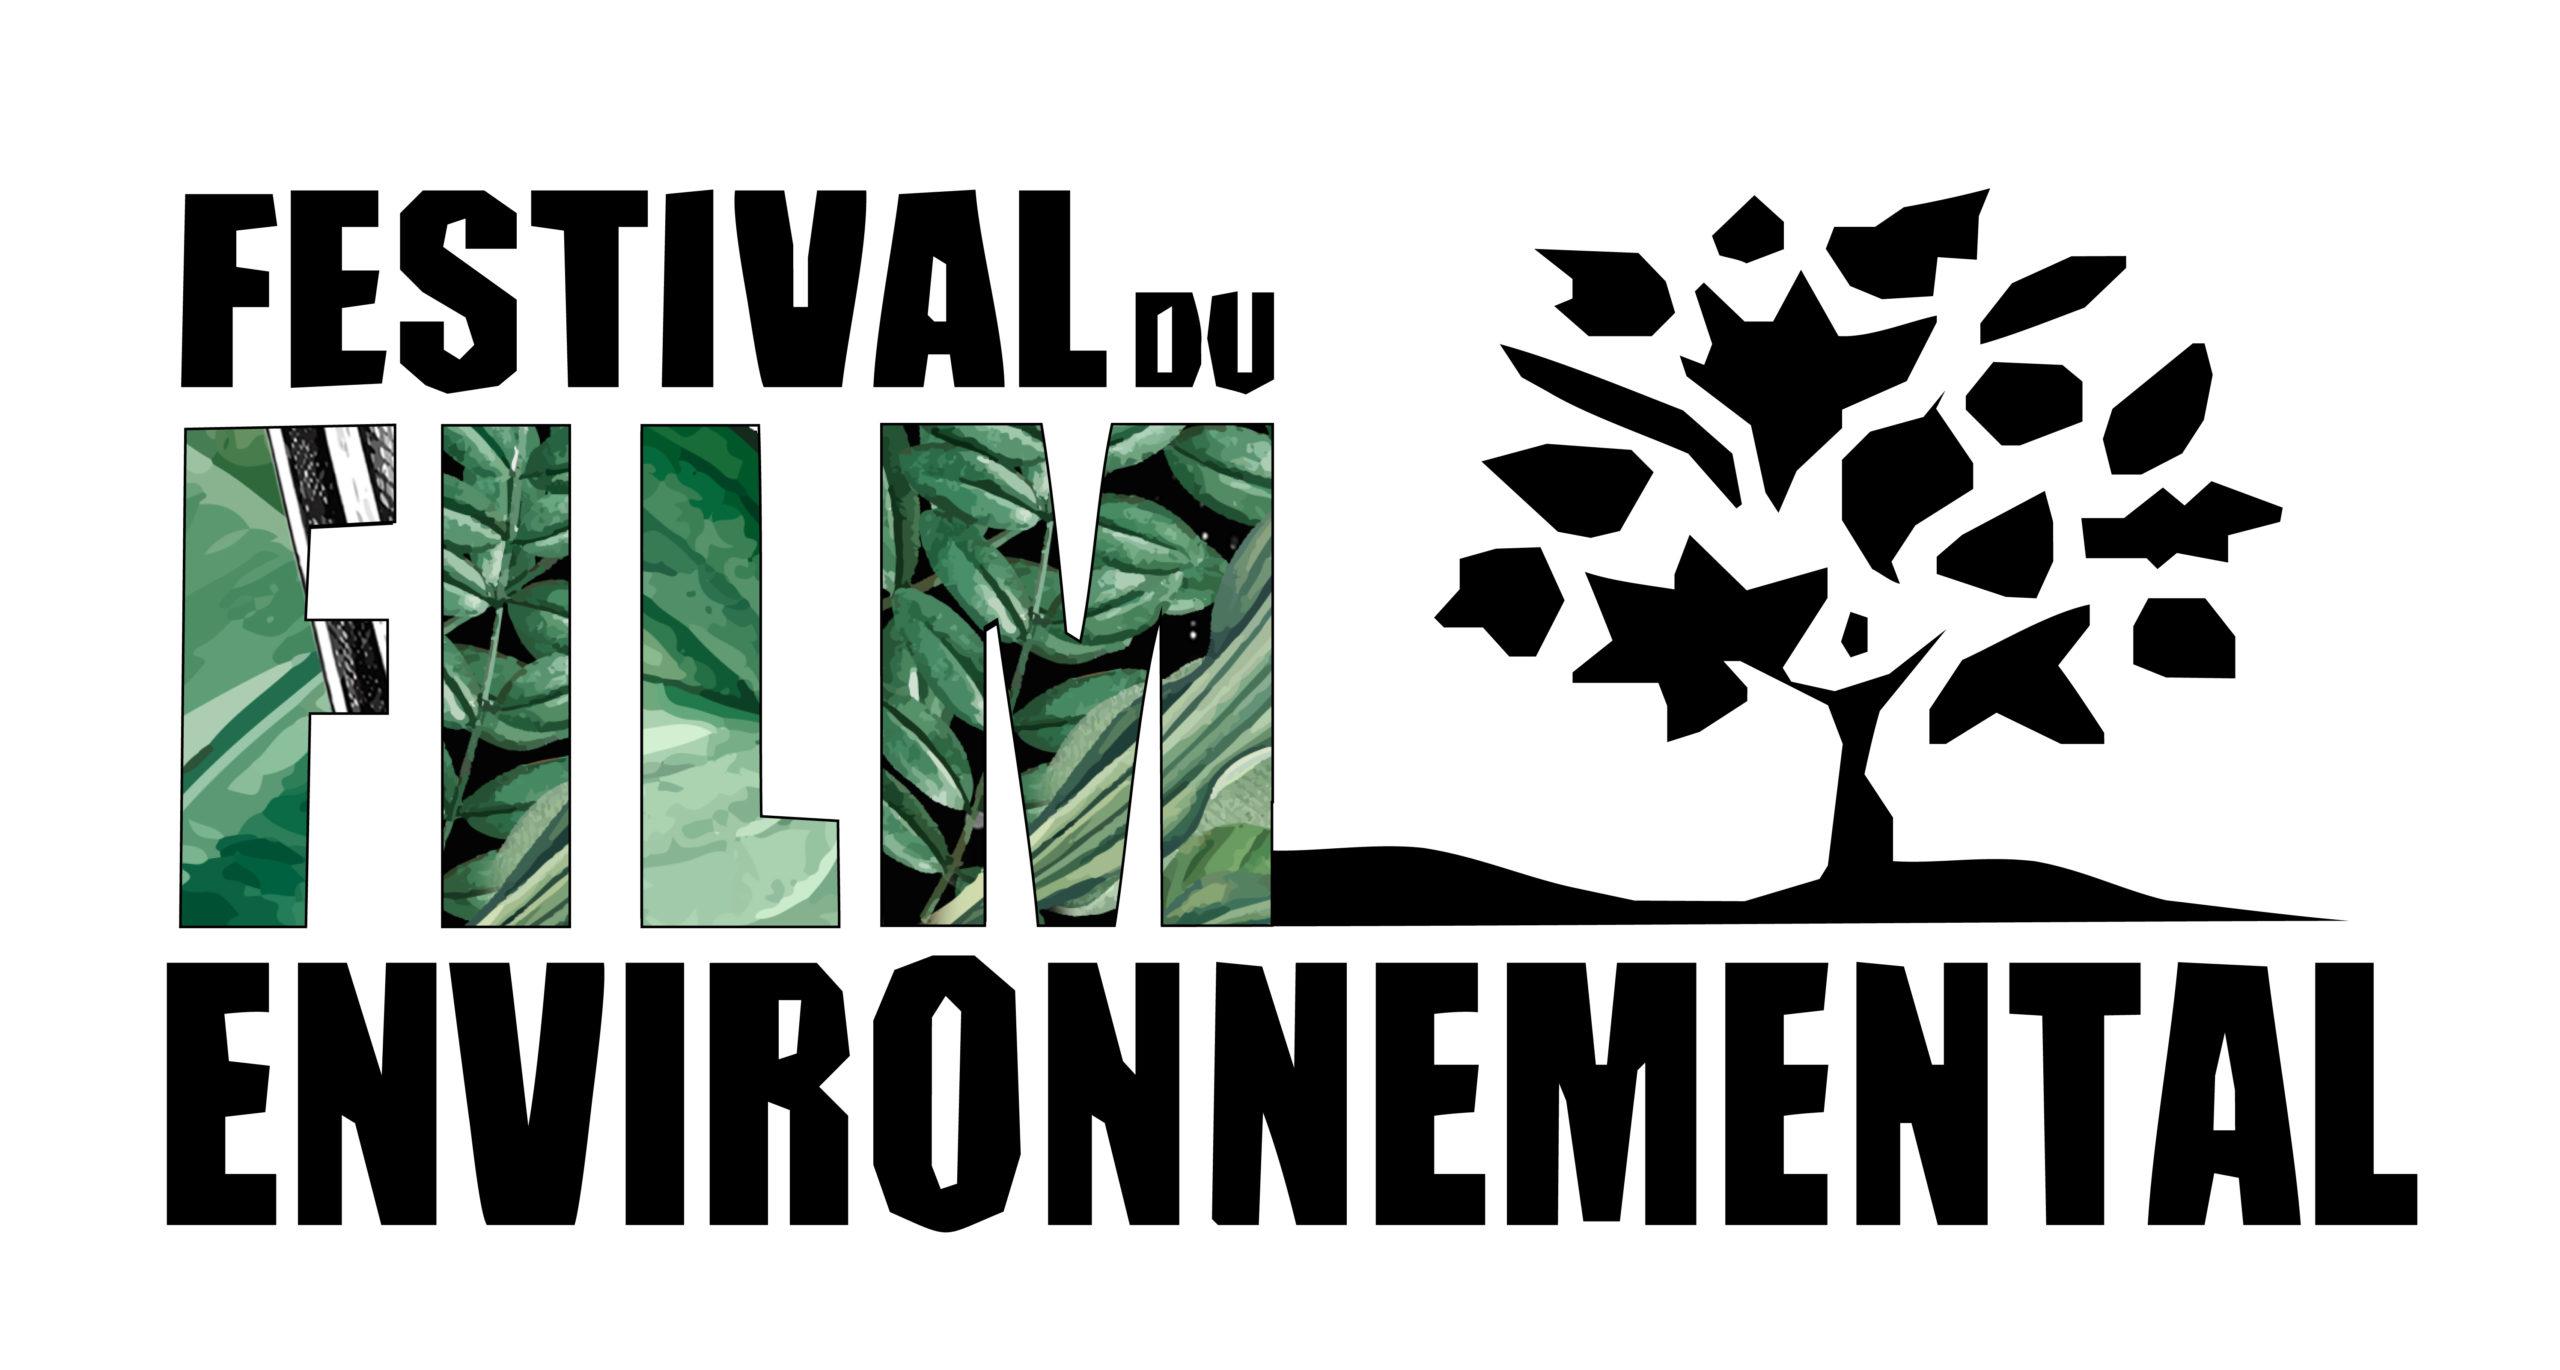 Festival du Film Environnemental